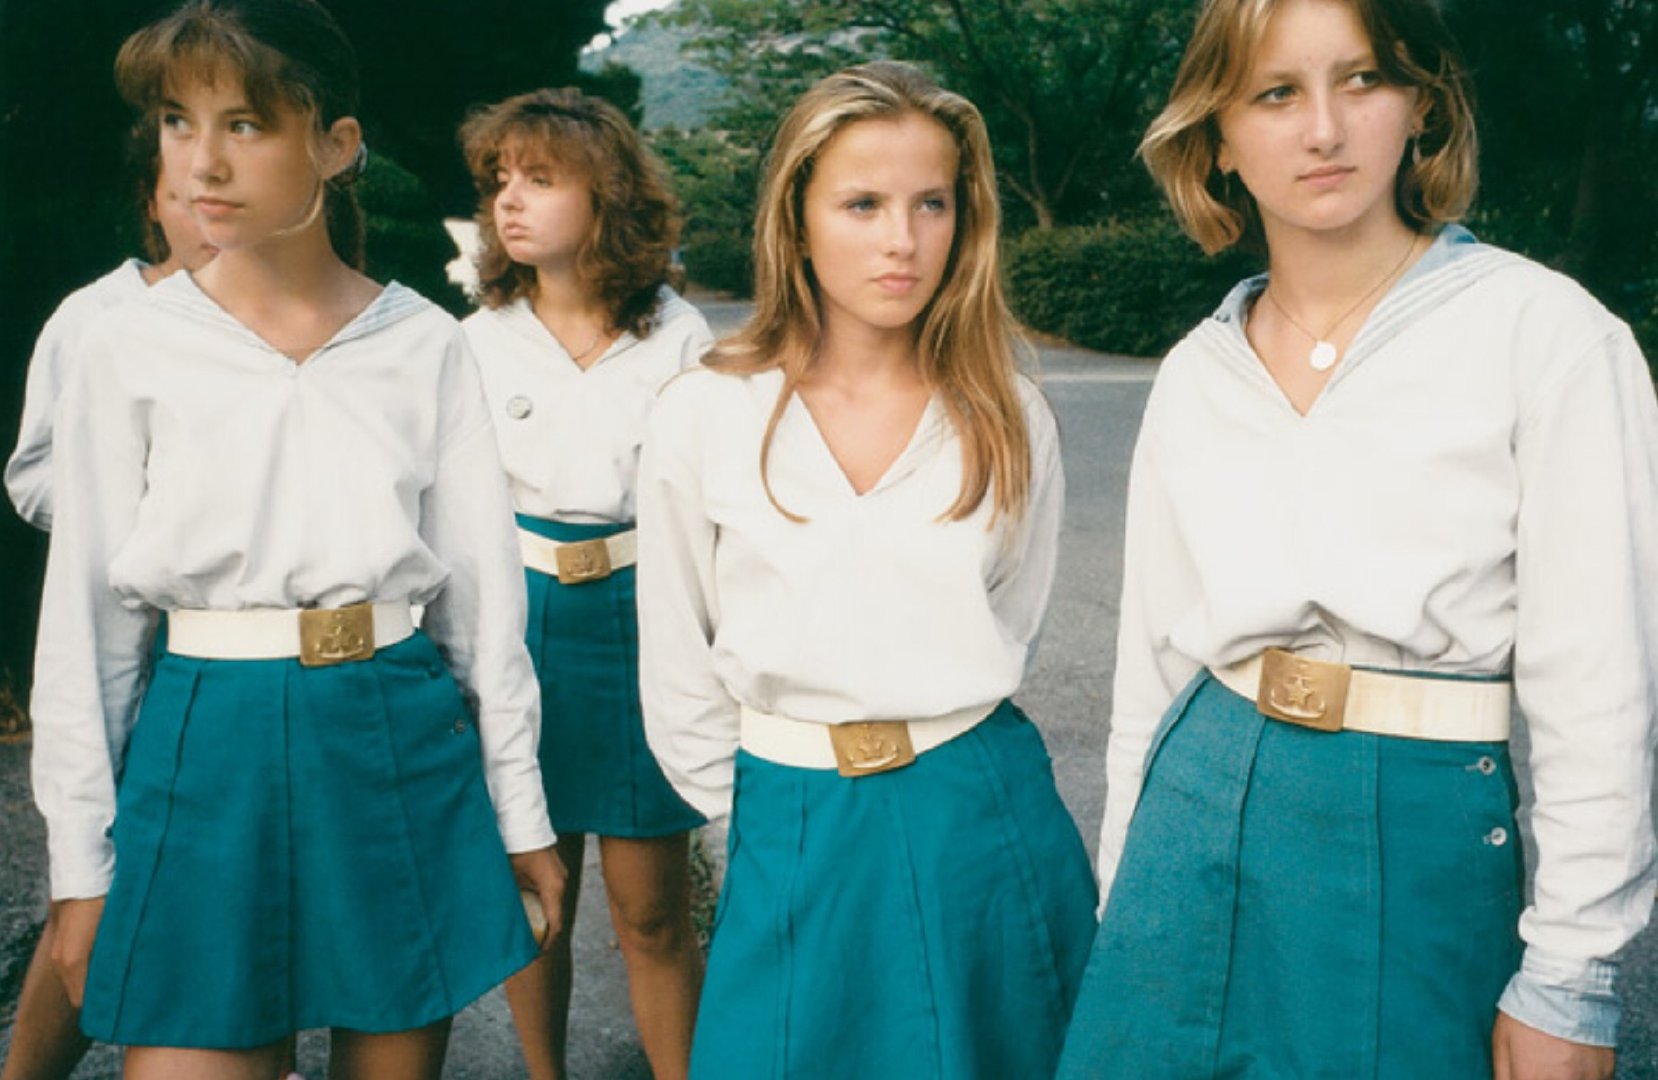 青春期，克里米亚 Artek 夏令营里的青少年们（1994-2003）法国摄影师 Claudine Doury 的一个纪实拍摄项目 ​​​ - itotii